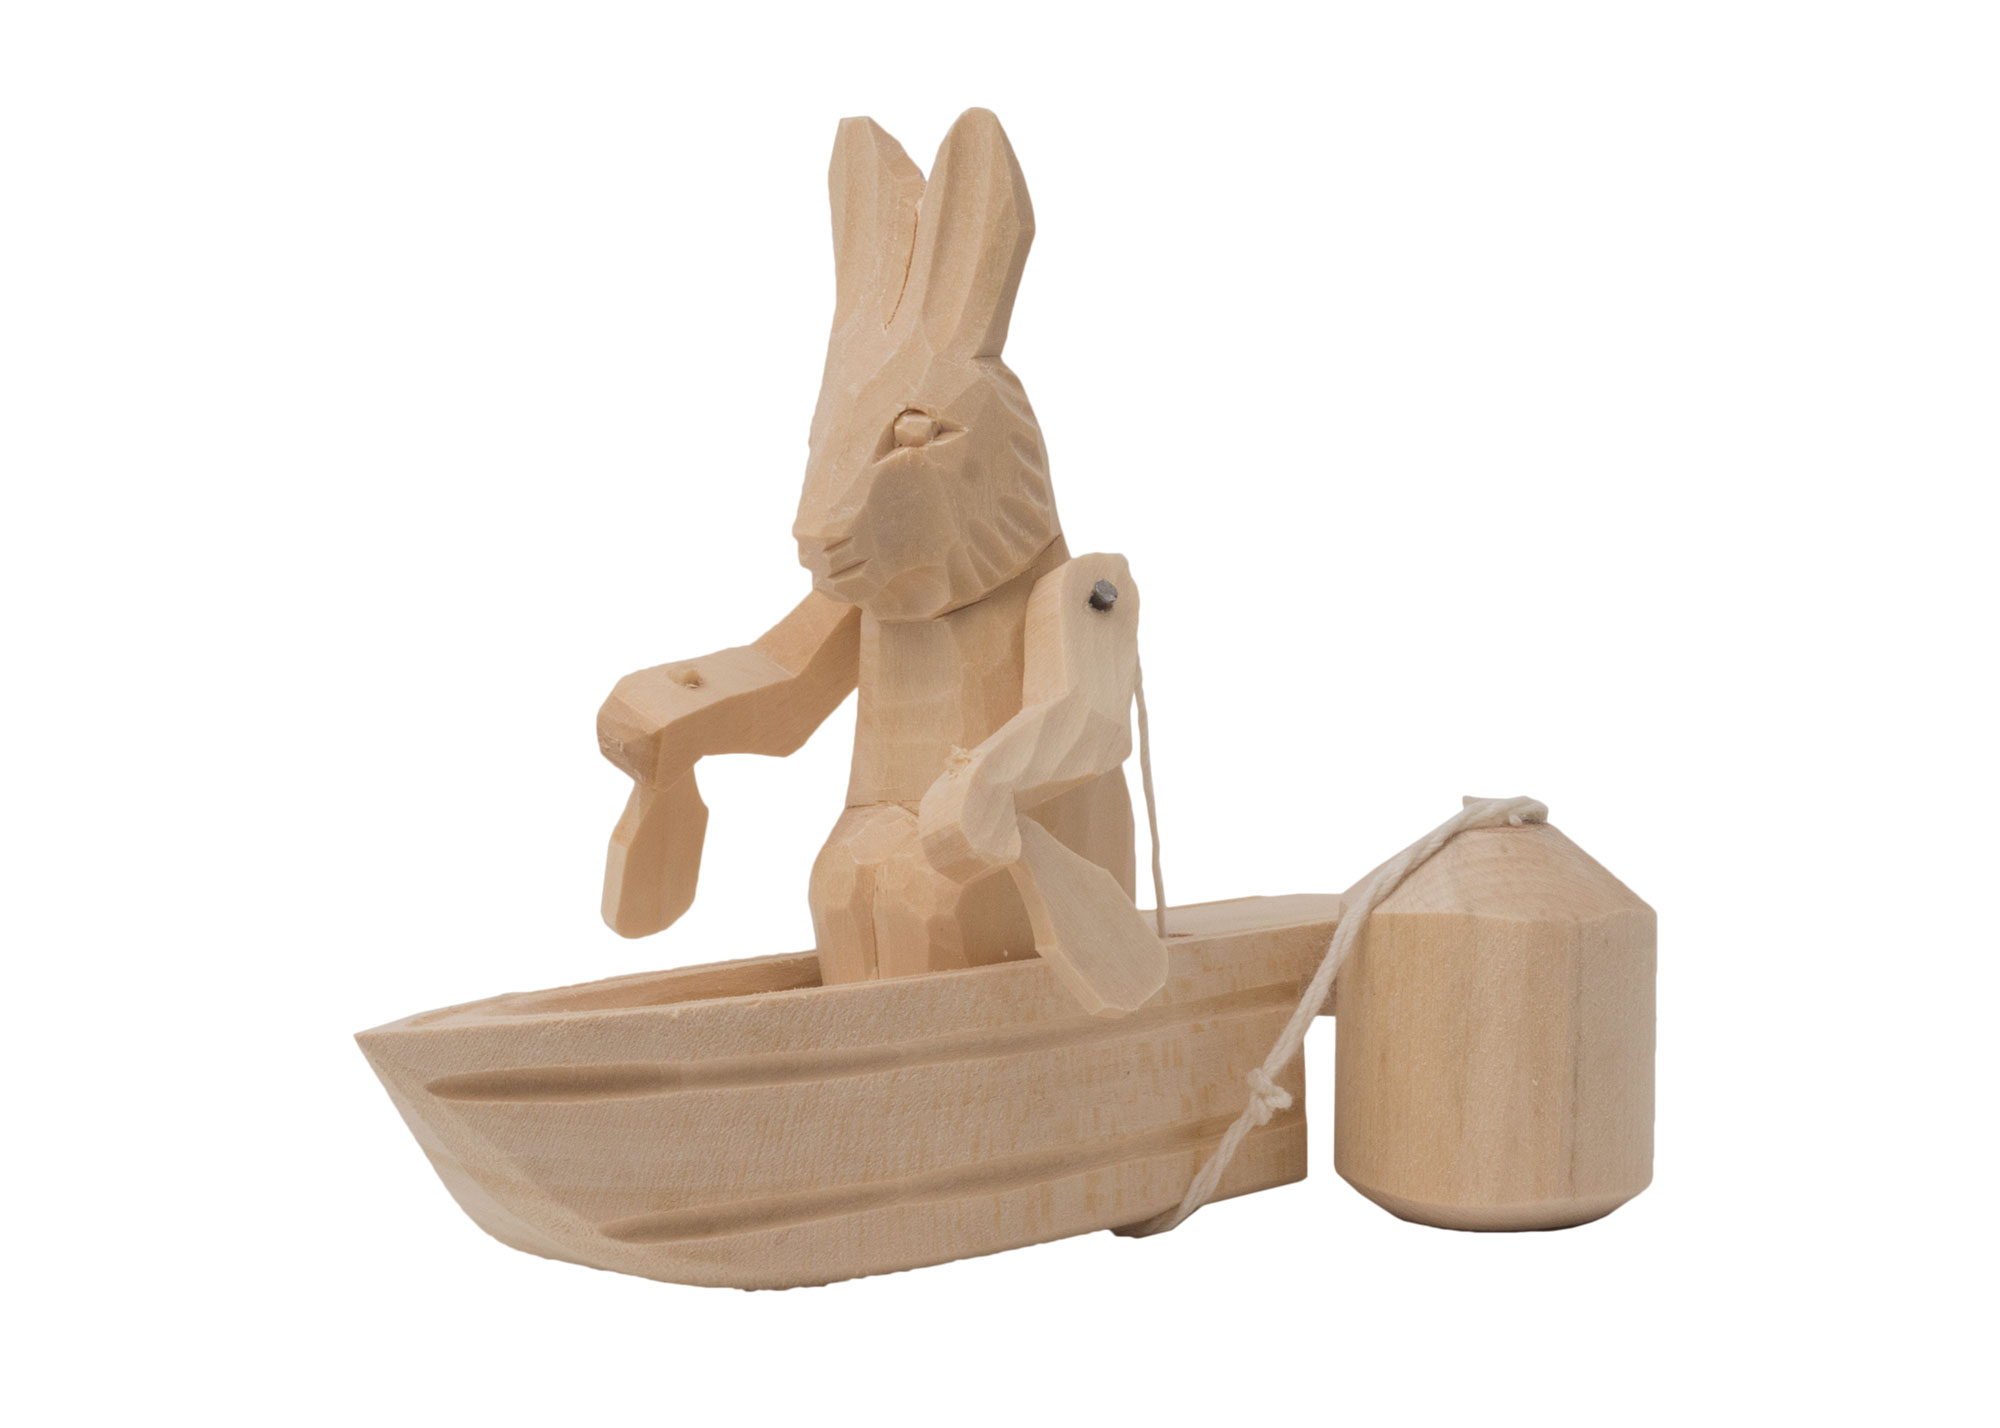 Buy Canoe Bunny Action Toy at GoldenCockerel.com